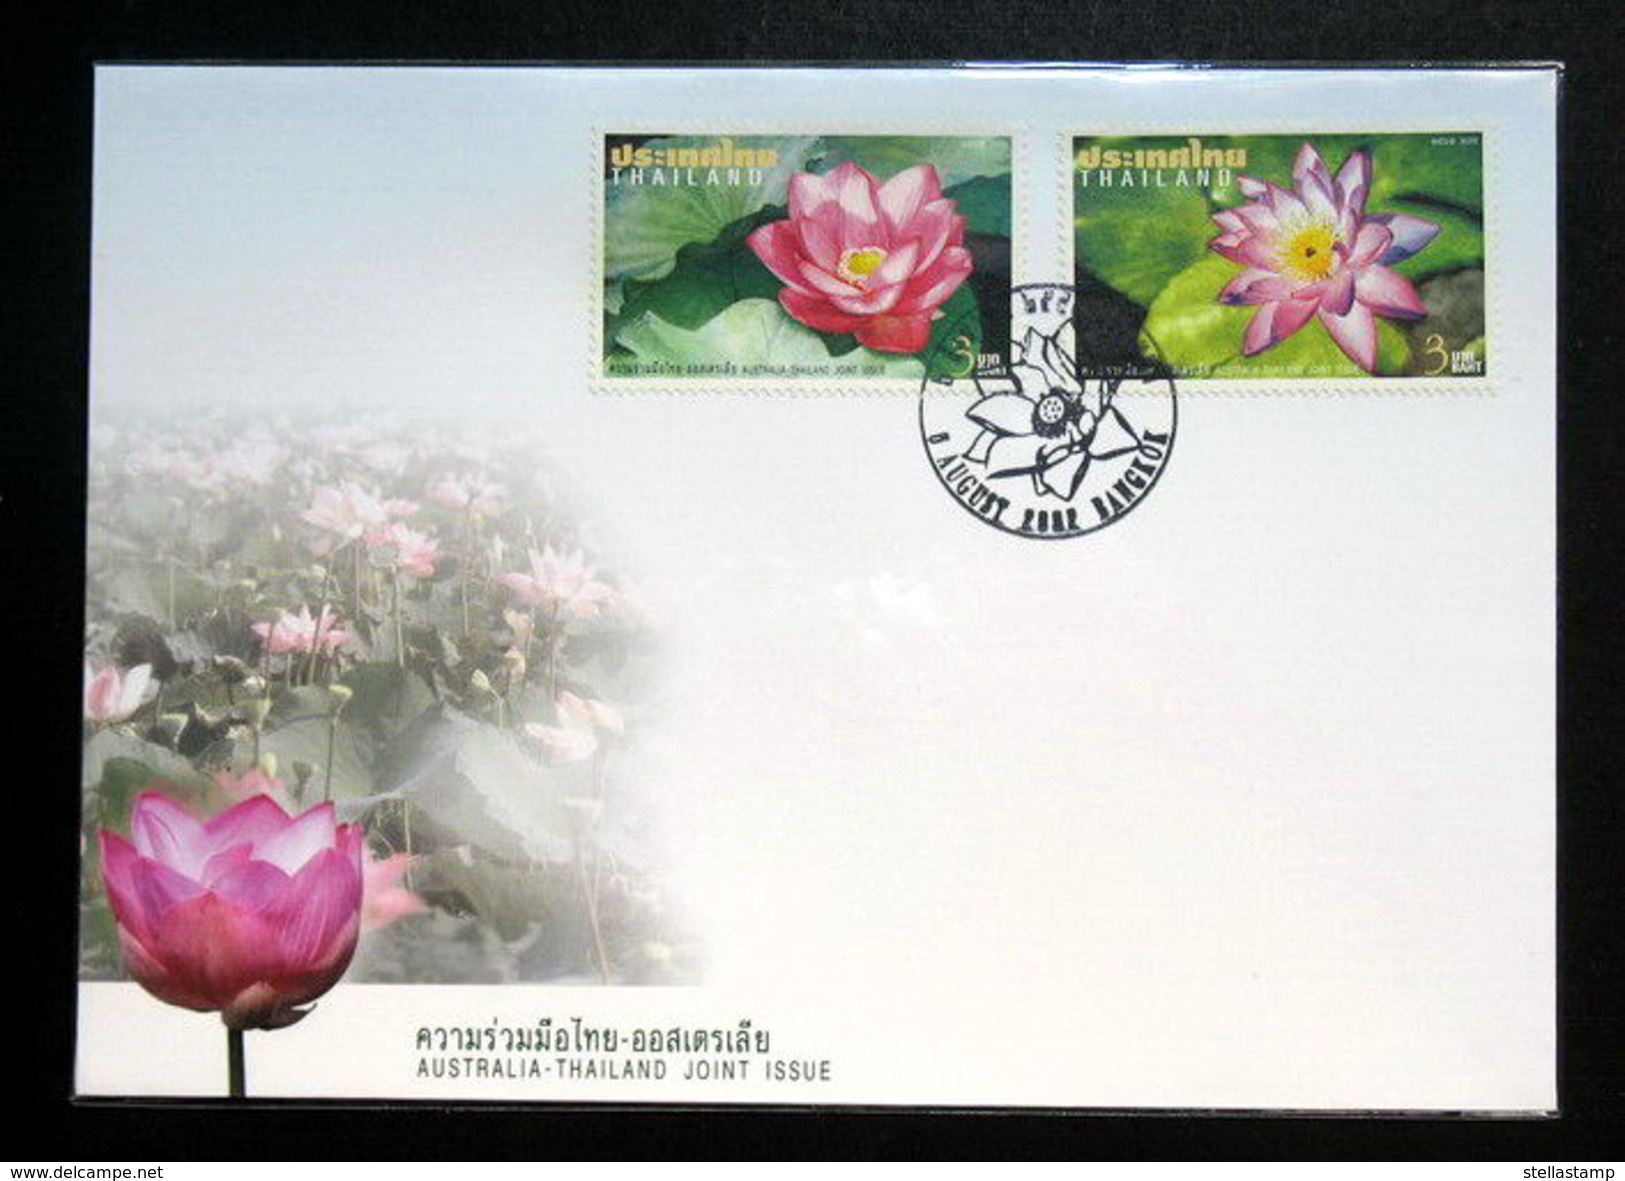 Thailand Stamp FDC 2002 Australia Thai Joint Issue - Thailand